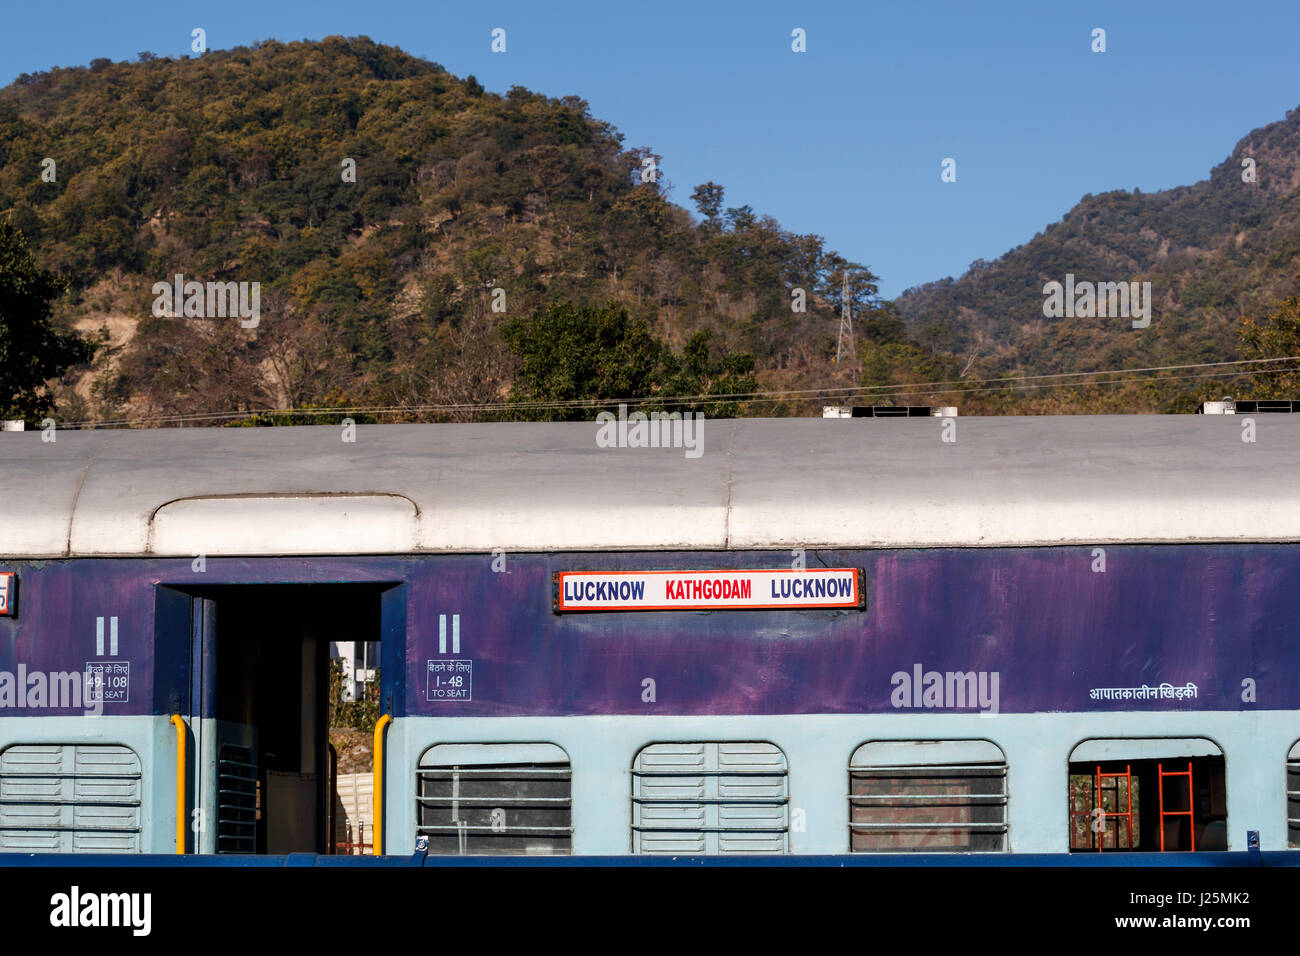 Indische Eisenbahn Zug Wagen, Kathgodam Station, Nainital Bezirk, Uttarakand, Nordindien, Anzeigetafeln für Lucknow - Kathgodam Linie Stockfoto